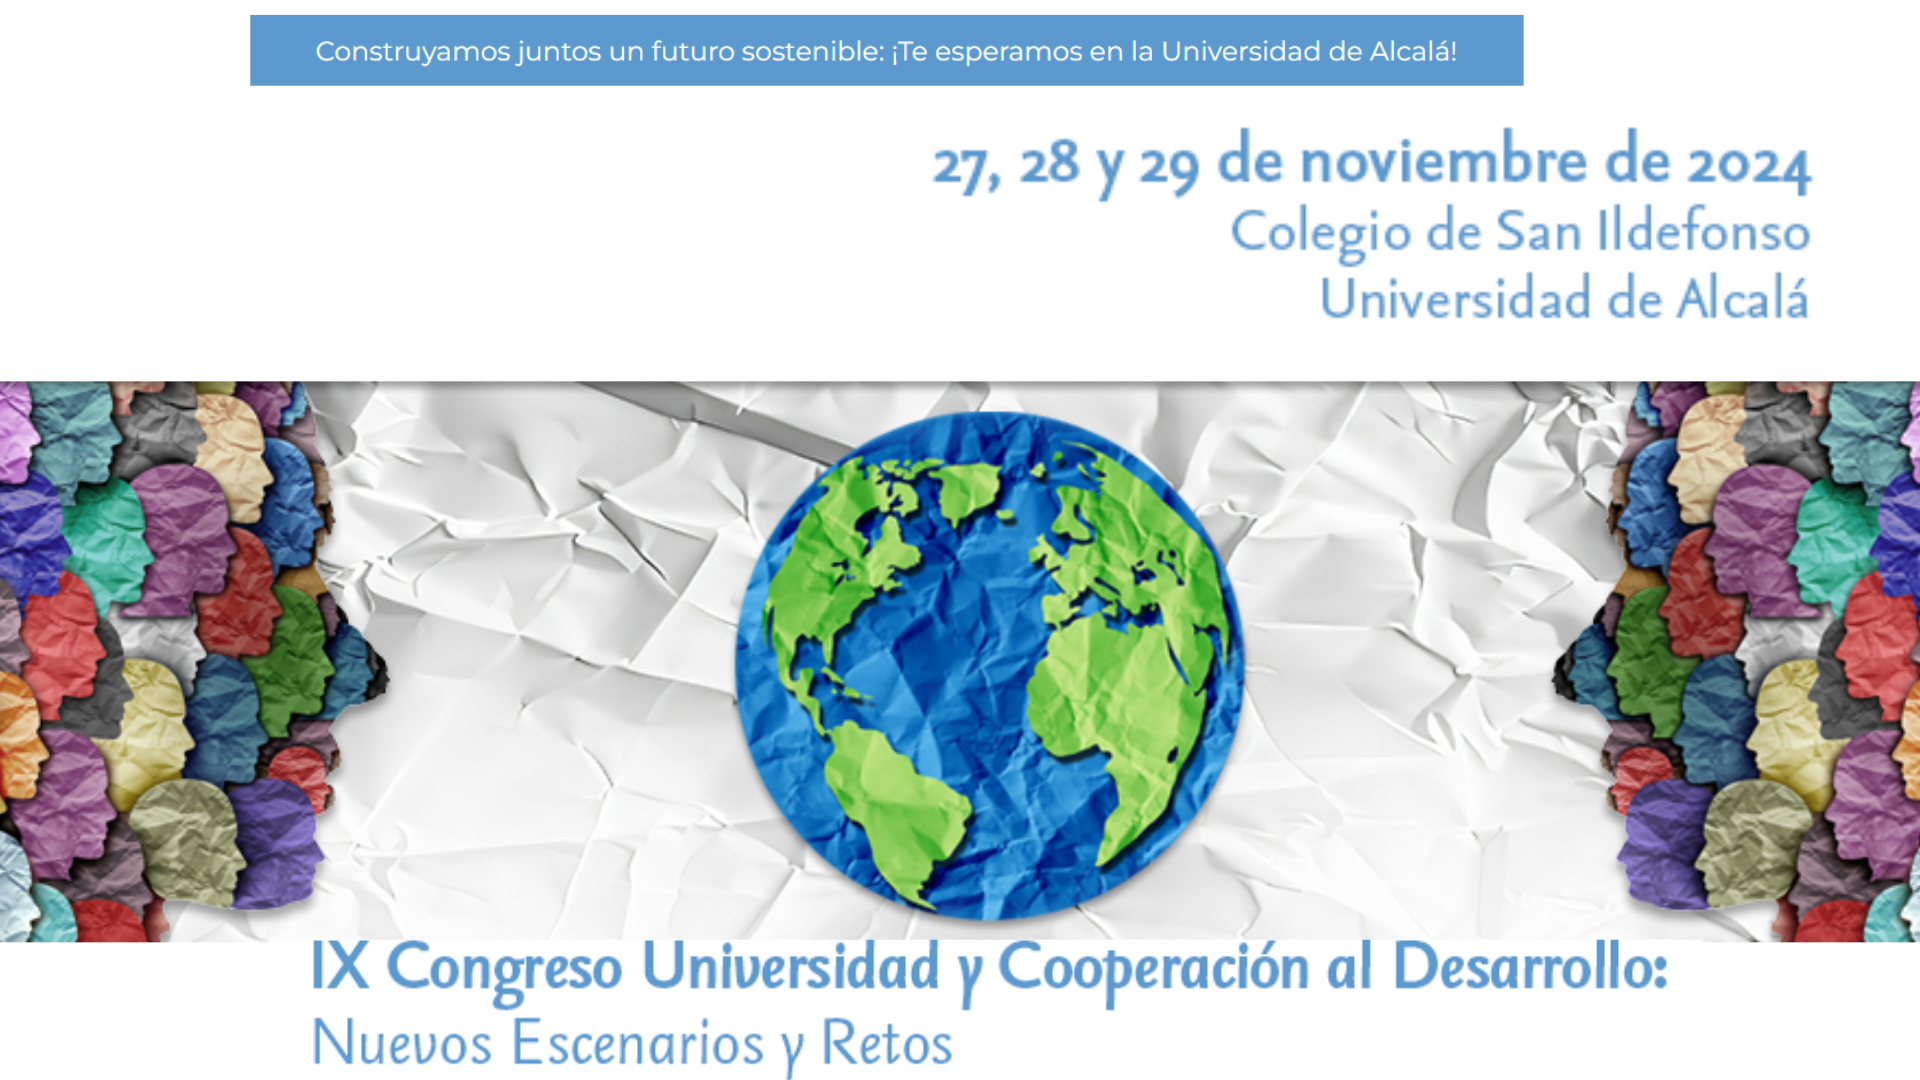 IX Congreso Universidad y Cooperación al Desarrollo: nuevos escenarios y retos